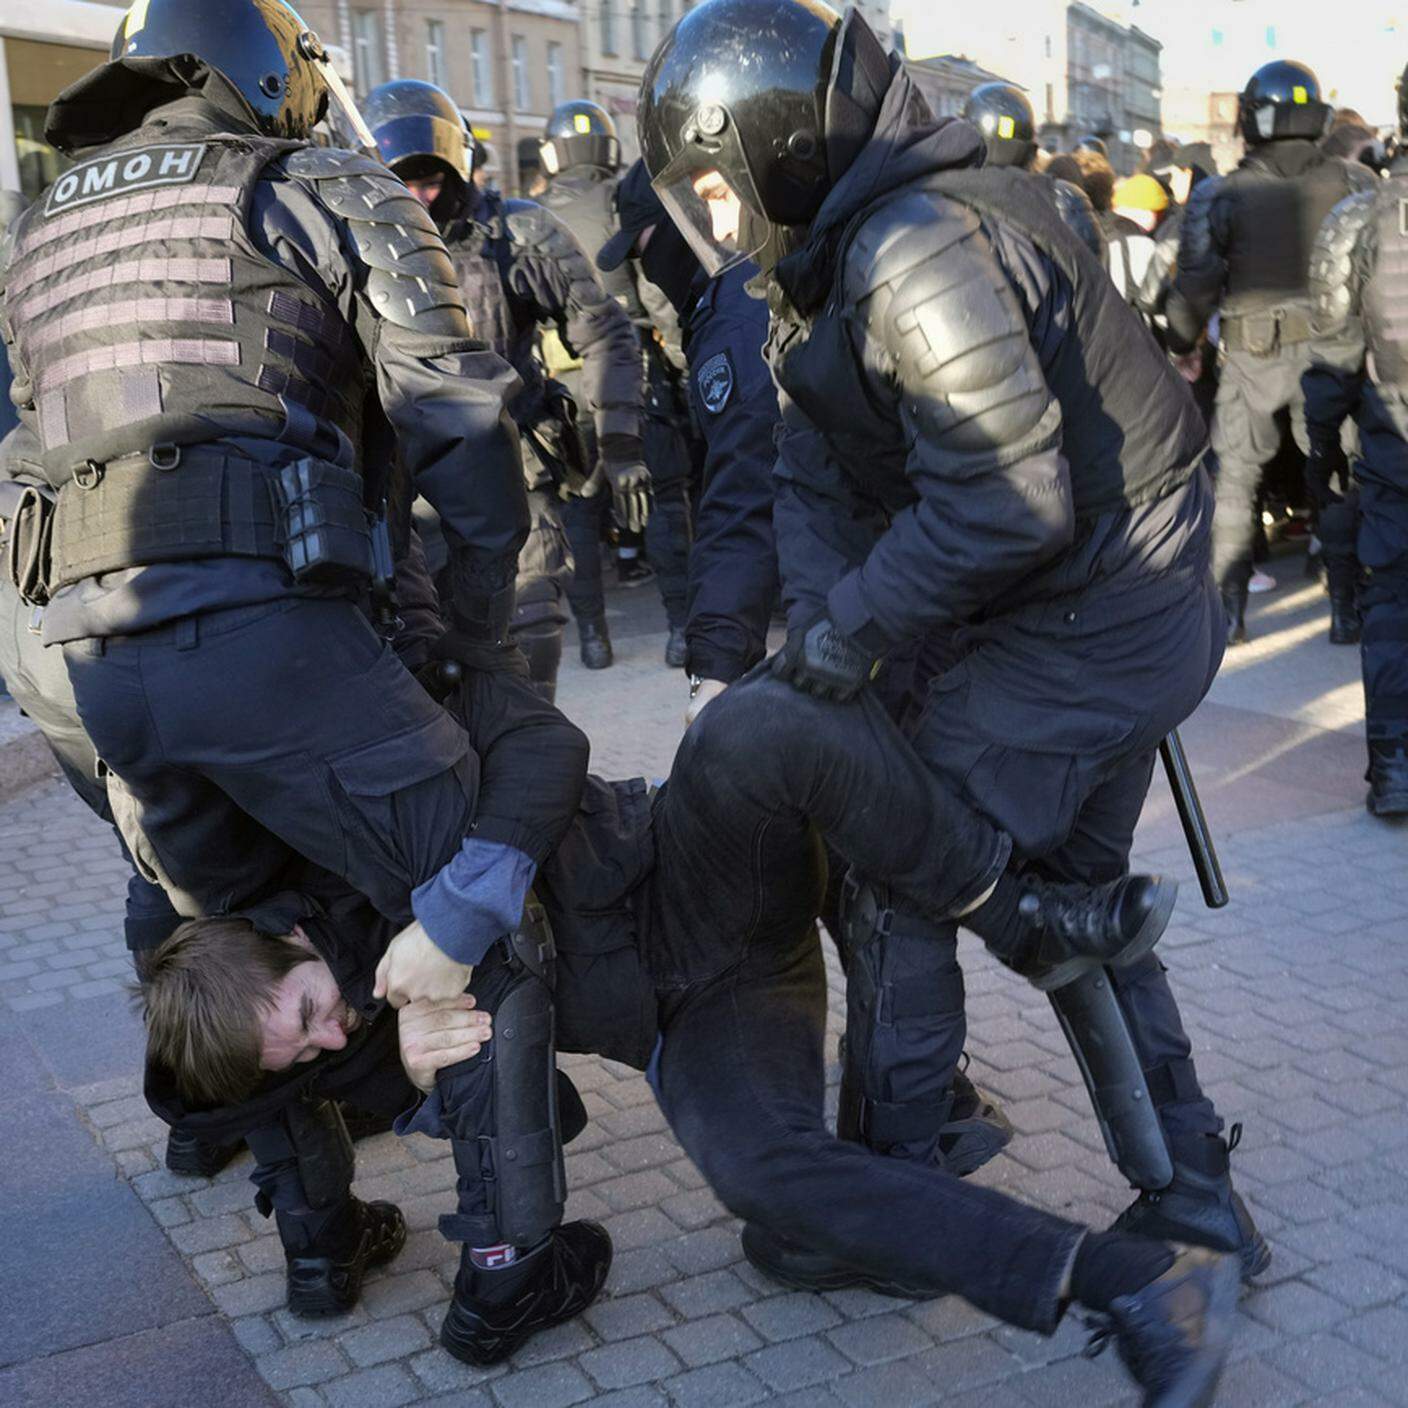 Sarebbero almeno 2'300 i russi arrestati durante le manifestazioni di questi giorni